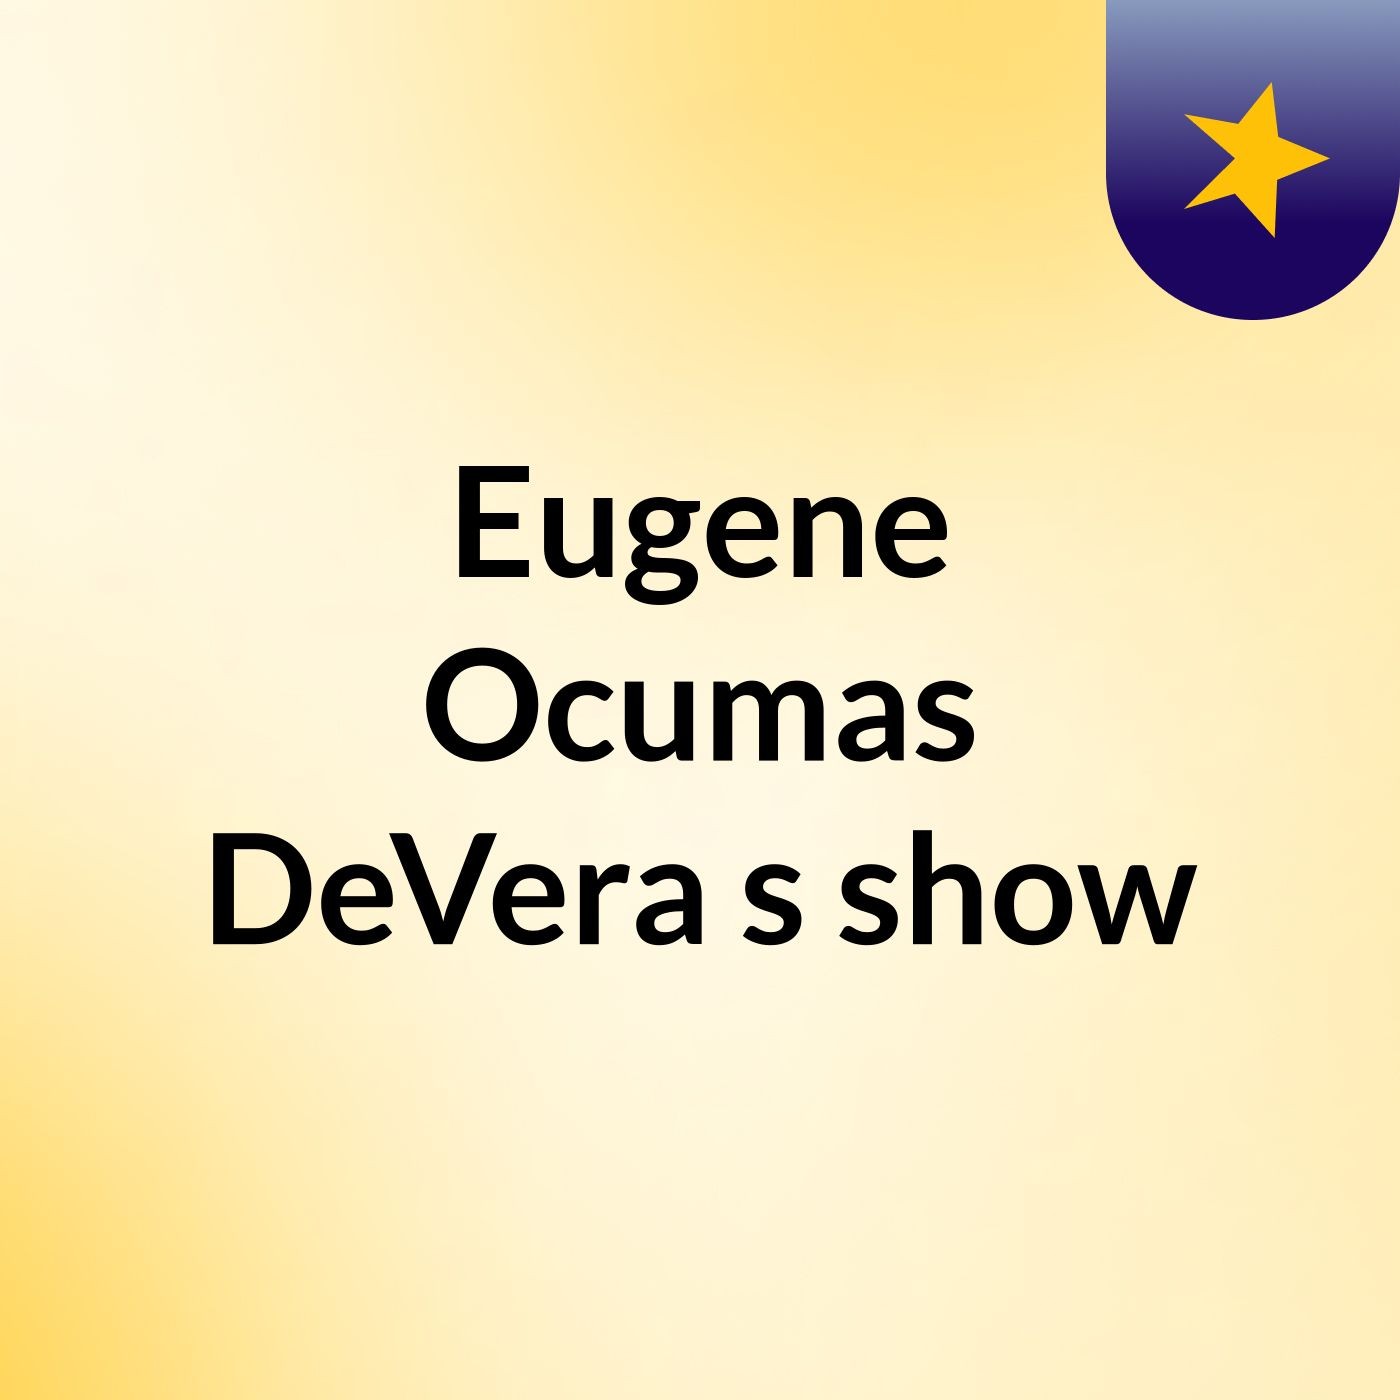 Eugene Ocumas DeVera's show